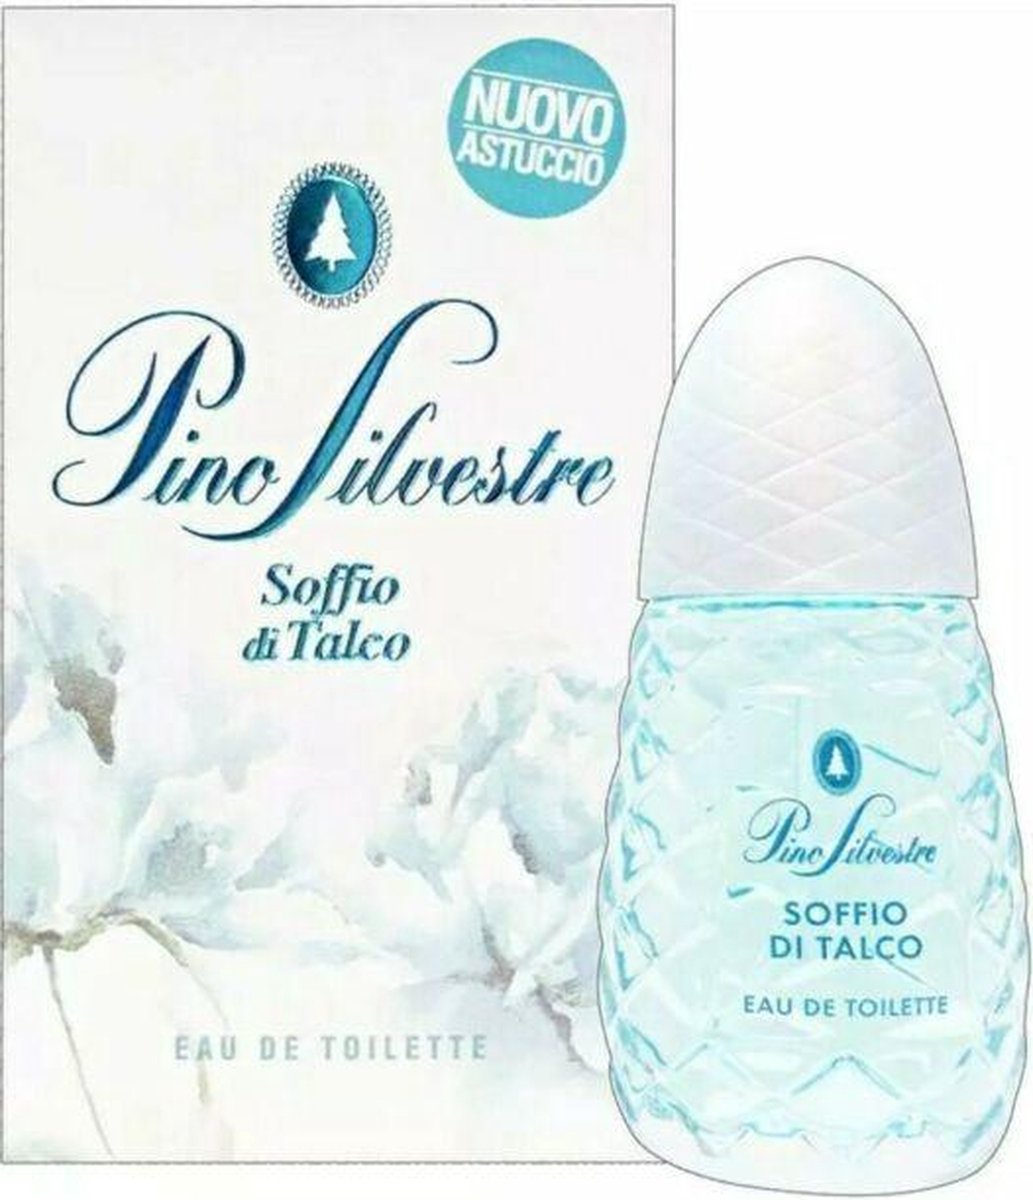 Pino silvestre parfum soffio di talco EDT 75ML Heerlijk voor hem en haar